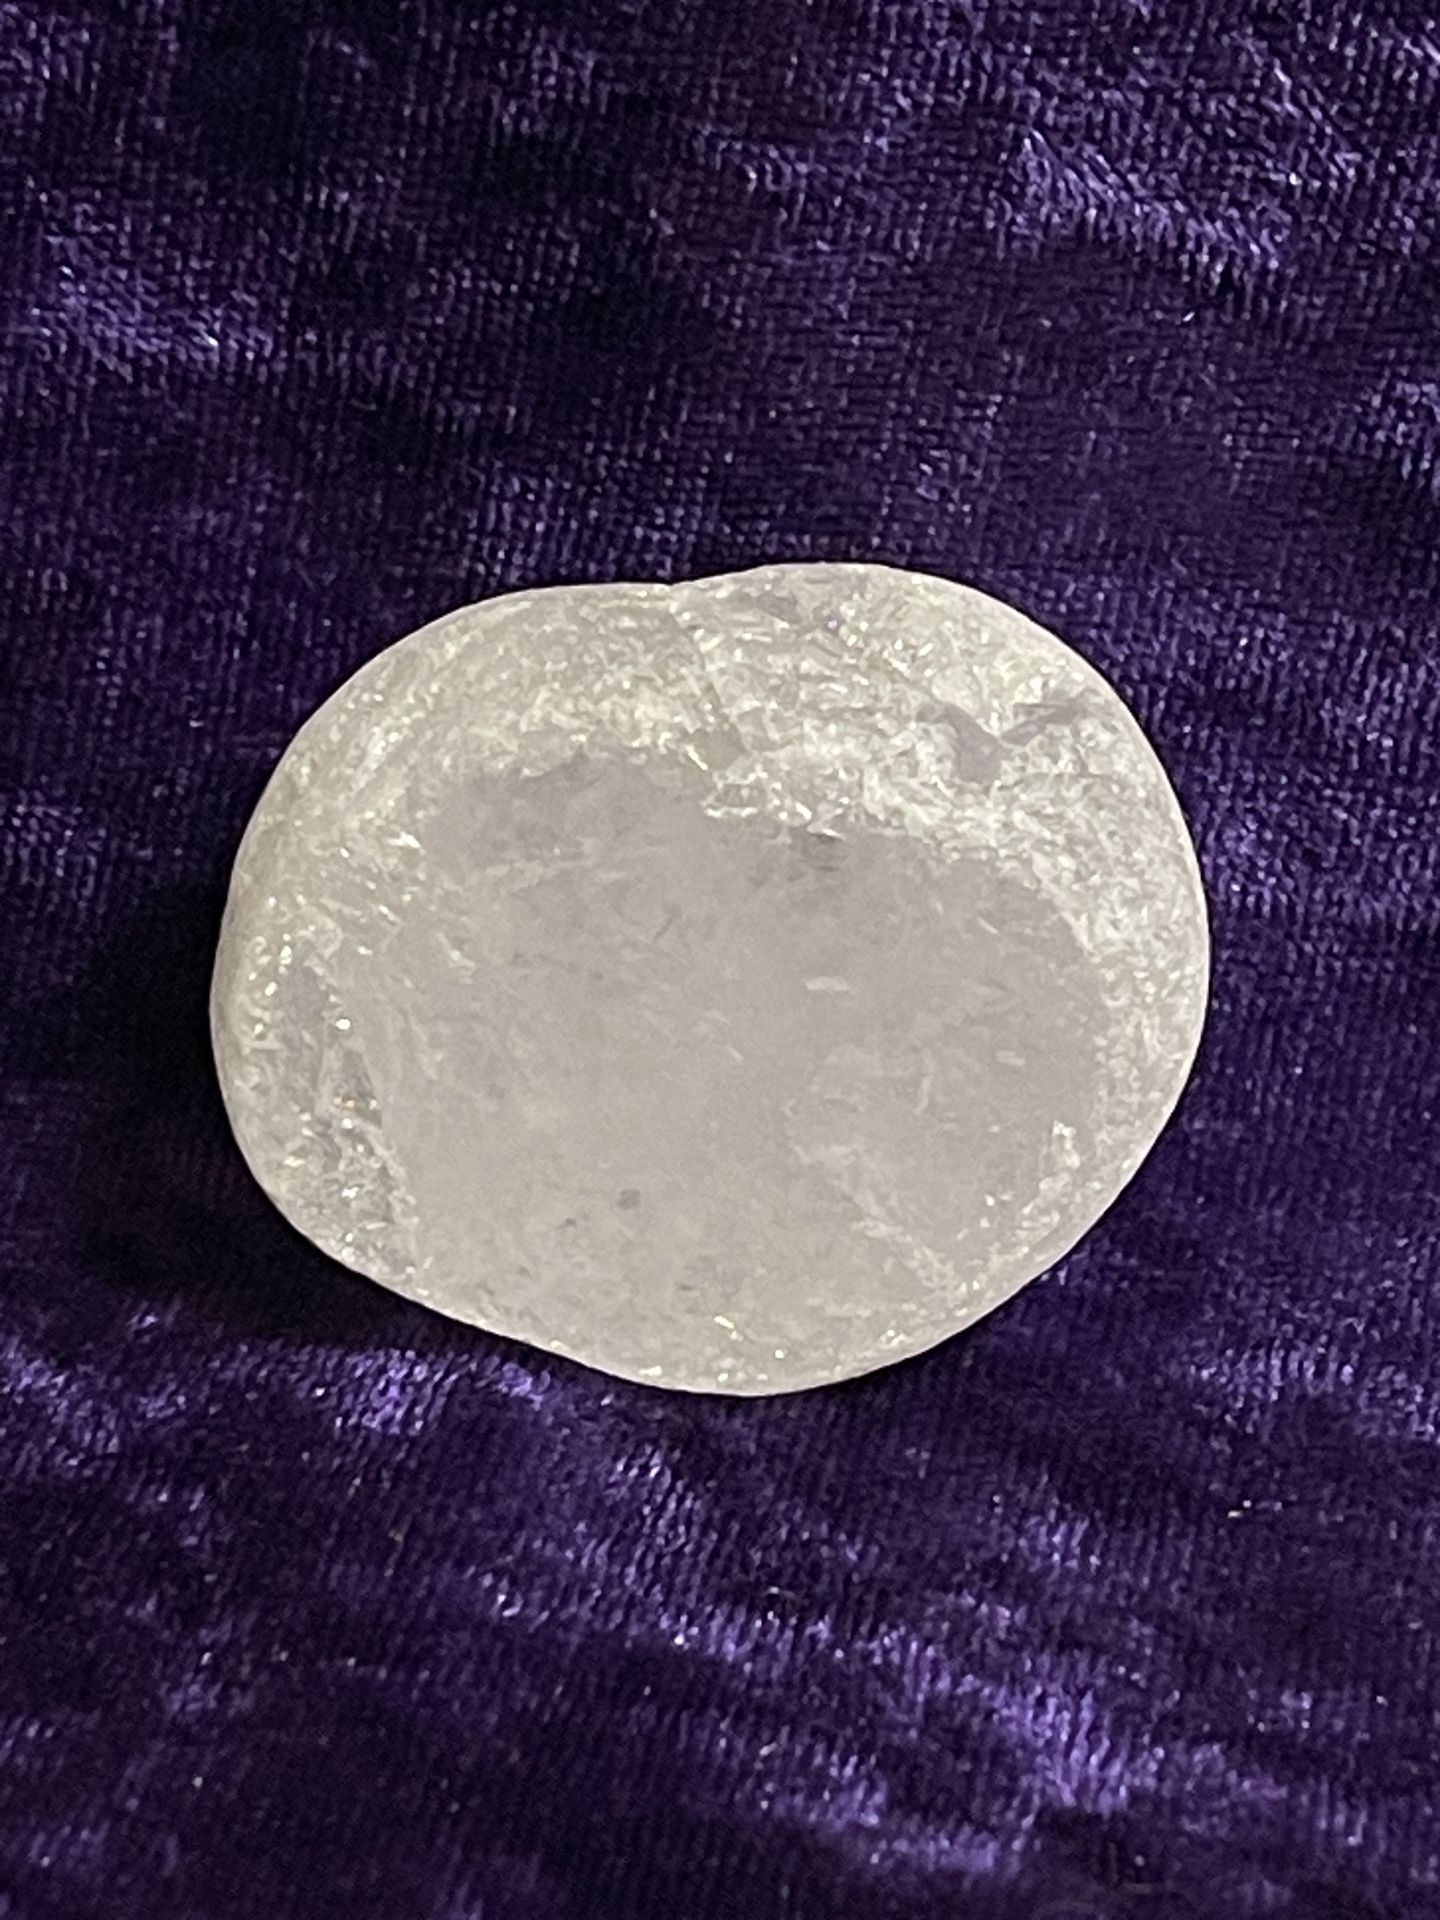 Clear Quartz Ema Egg Crystal